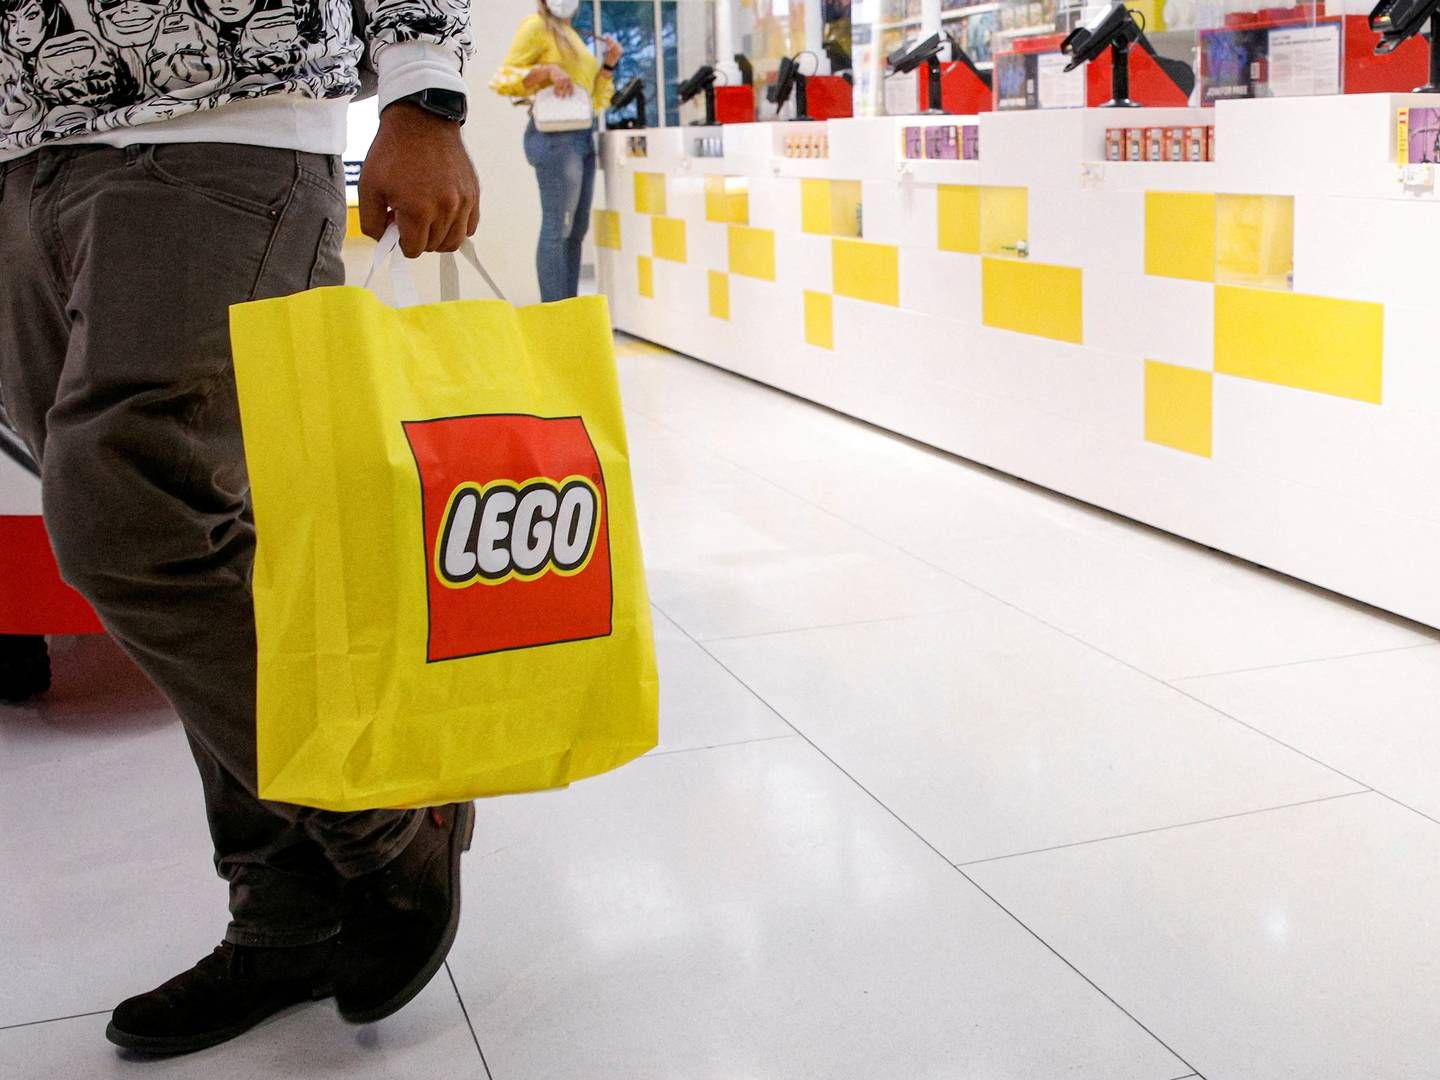 Lego vil udvide butiksnettet i Kina med 80 nye fysiske butikker i år. | Foto: BRENDAN MCDERMID/REUTERS / X90143